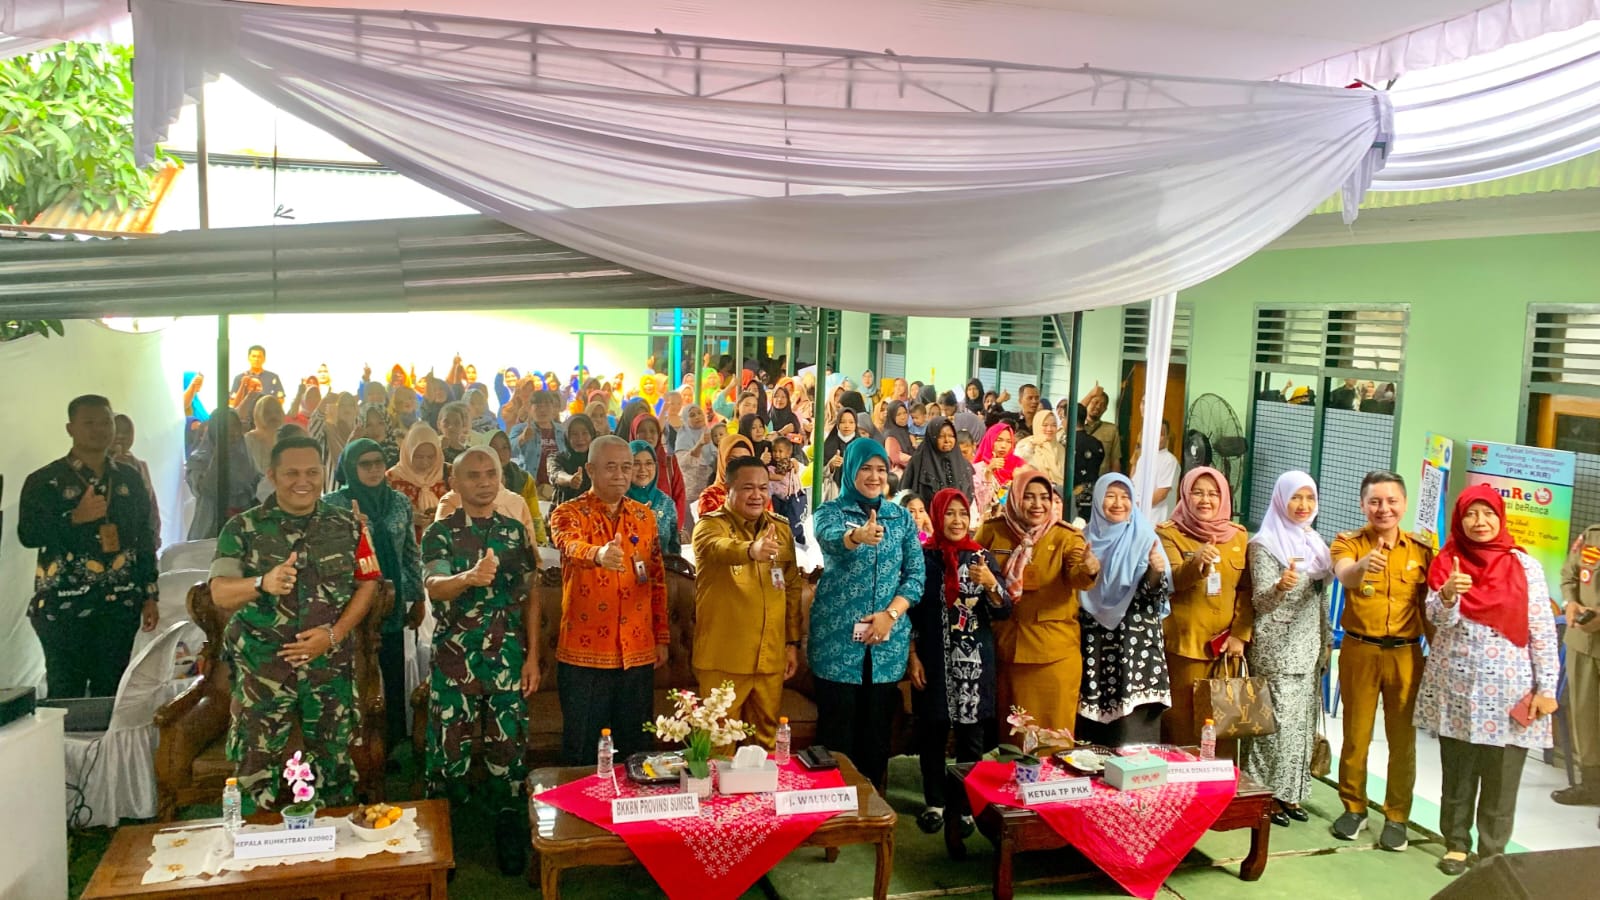 BKKBN Sumatera Selatan Sukses Luncurkan Layanan KB MKJP, Lubuk Linggau Kota Pertama yang Dipilih